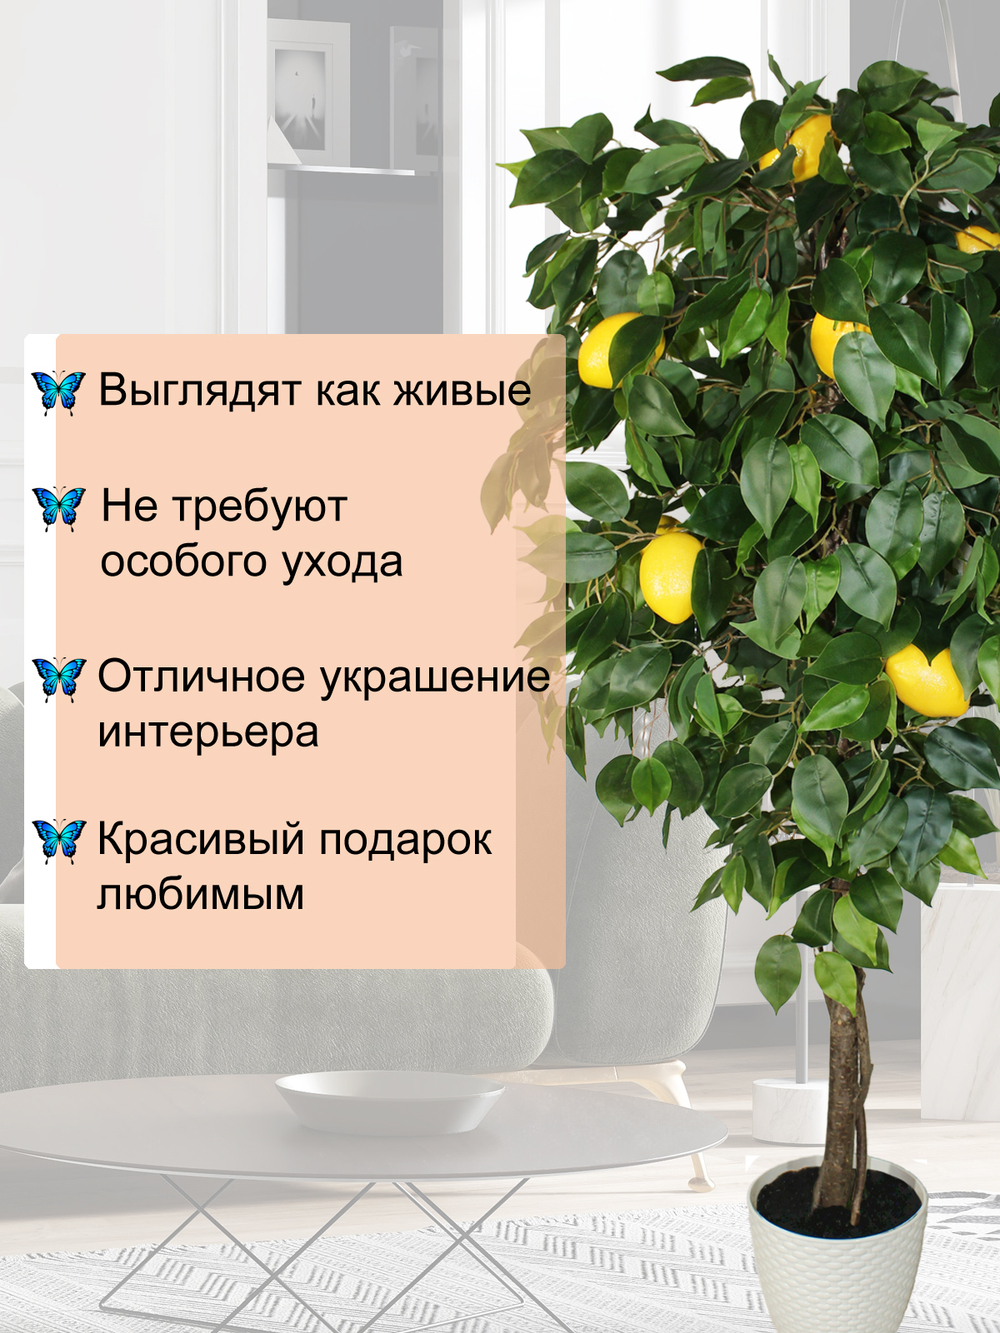 Искусственное лимонное дерево 150см в кашпо